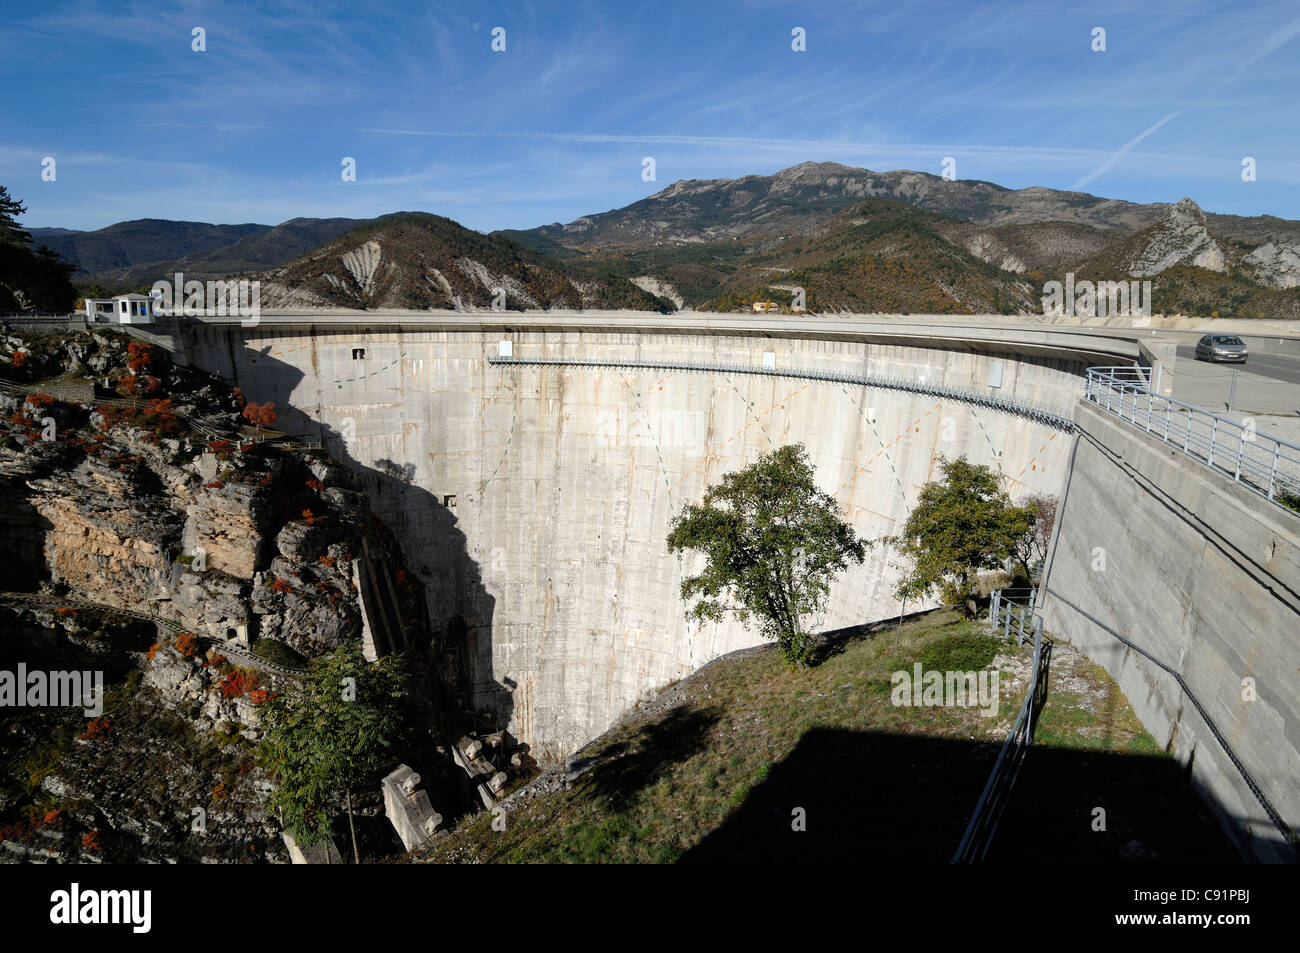 Barrage de Castillon ou barrage et centrale hydroélectrique de Demandolx, près de Castellane Alpes-de-haute-Provence dans le sud des Alpes françaises Banque D'Images